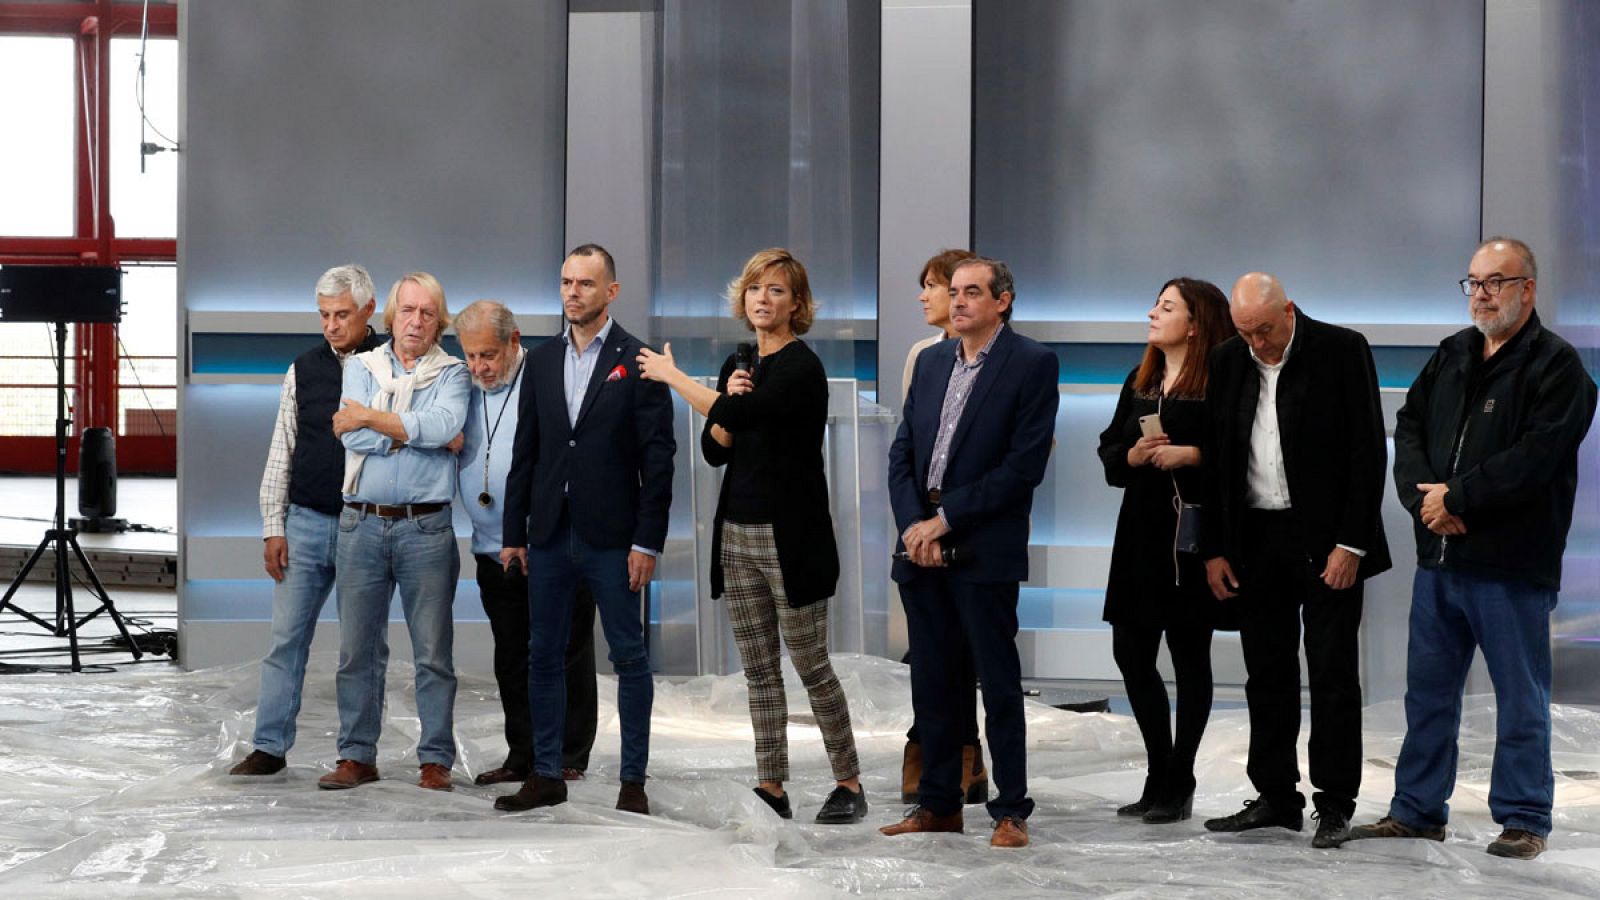 Debate a cinco:La Academia de Televisión ultima los detalles del debate a cinco que ofrecerá este lunes RTVE - RTVE.es